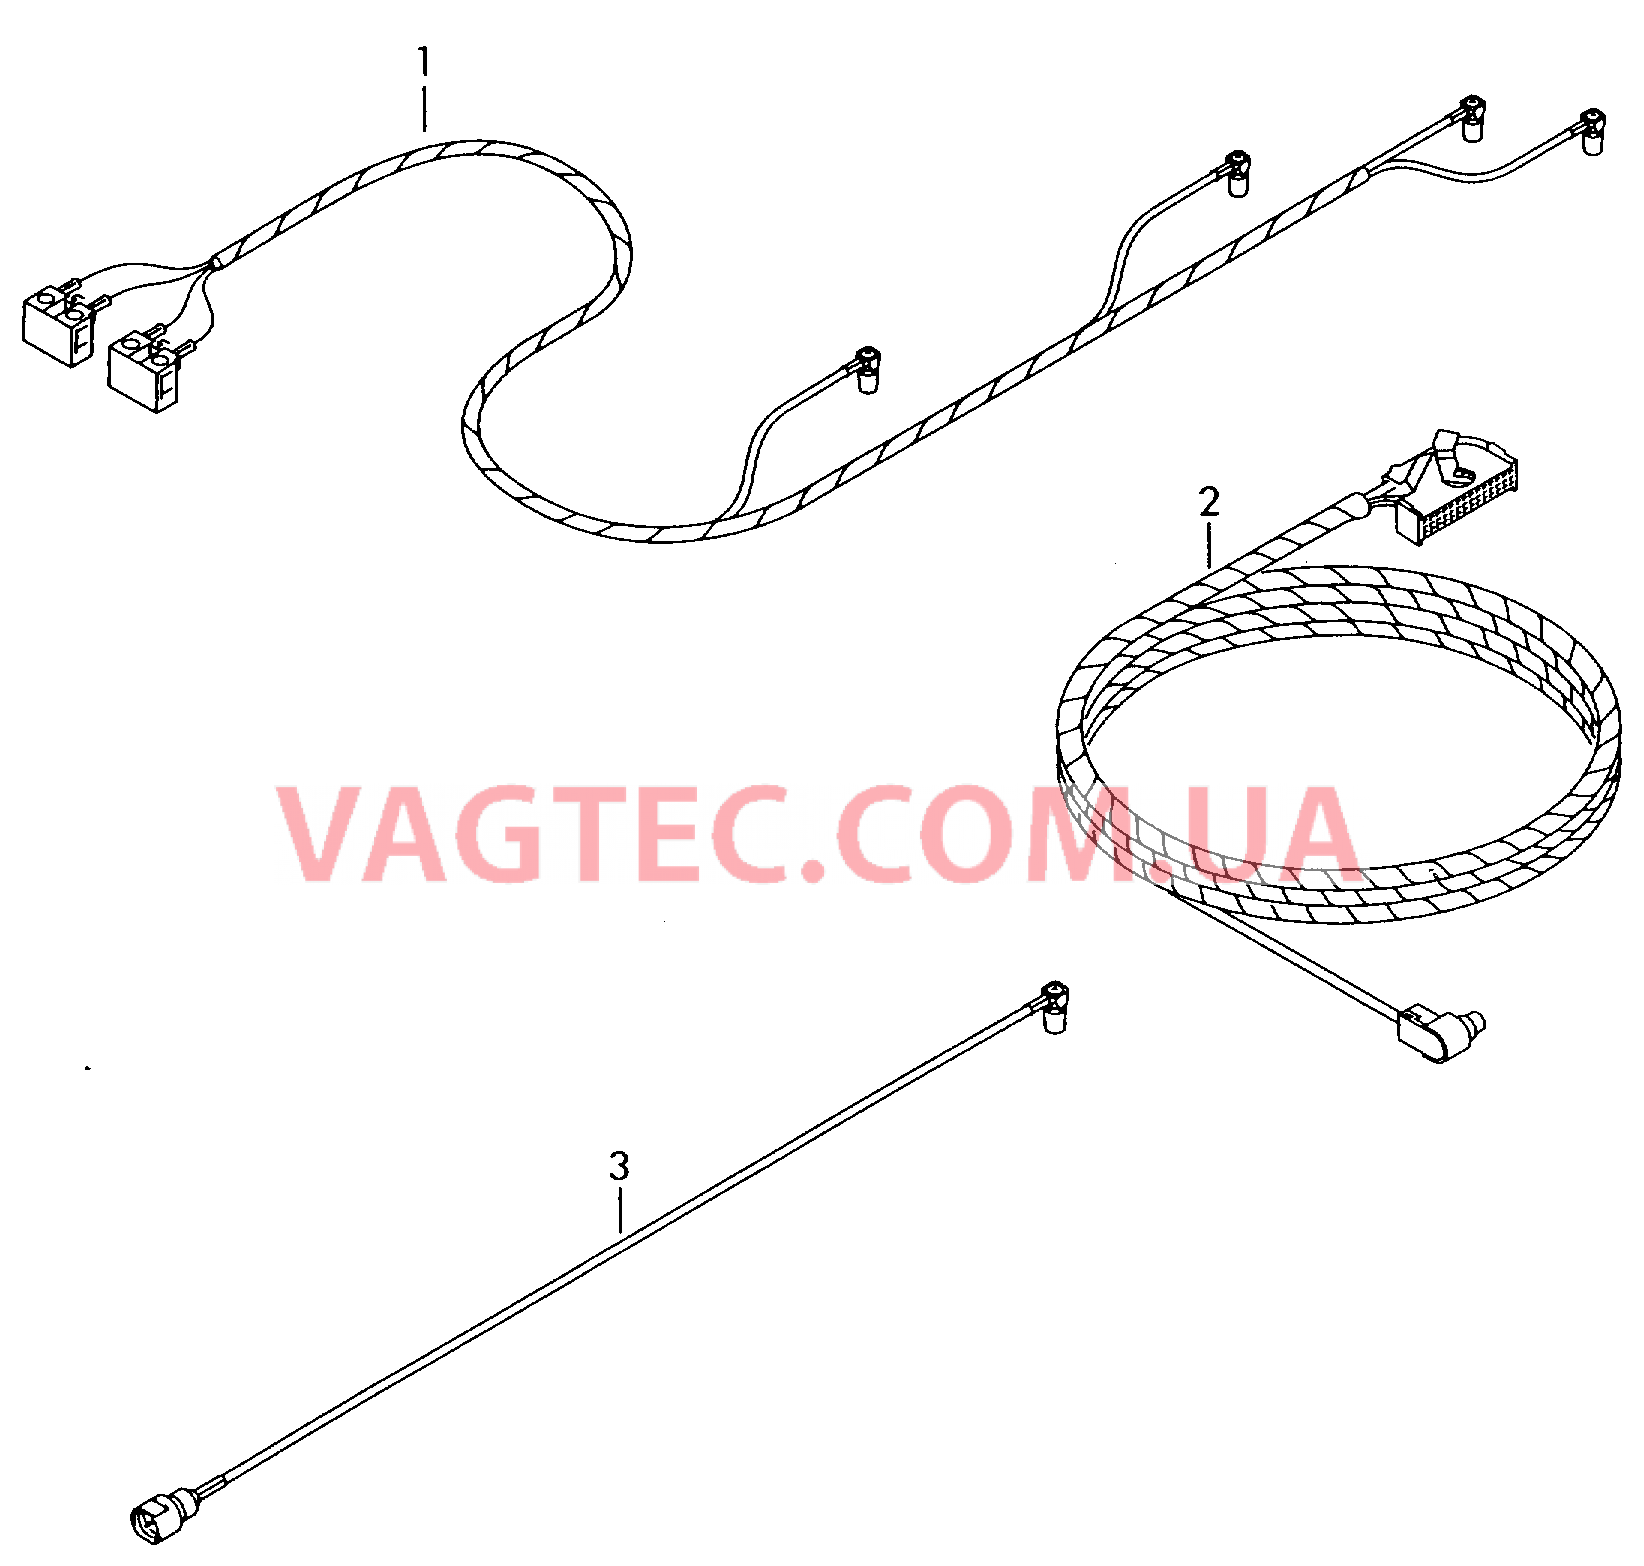 Жгут проводов системы навигации         также см. иллюстрацию:  для VOLKSWAGEN Passat 2002